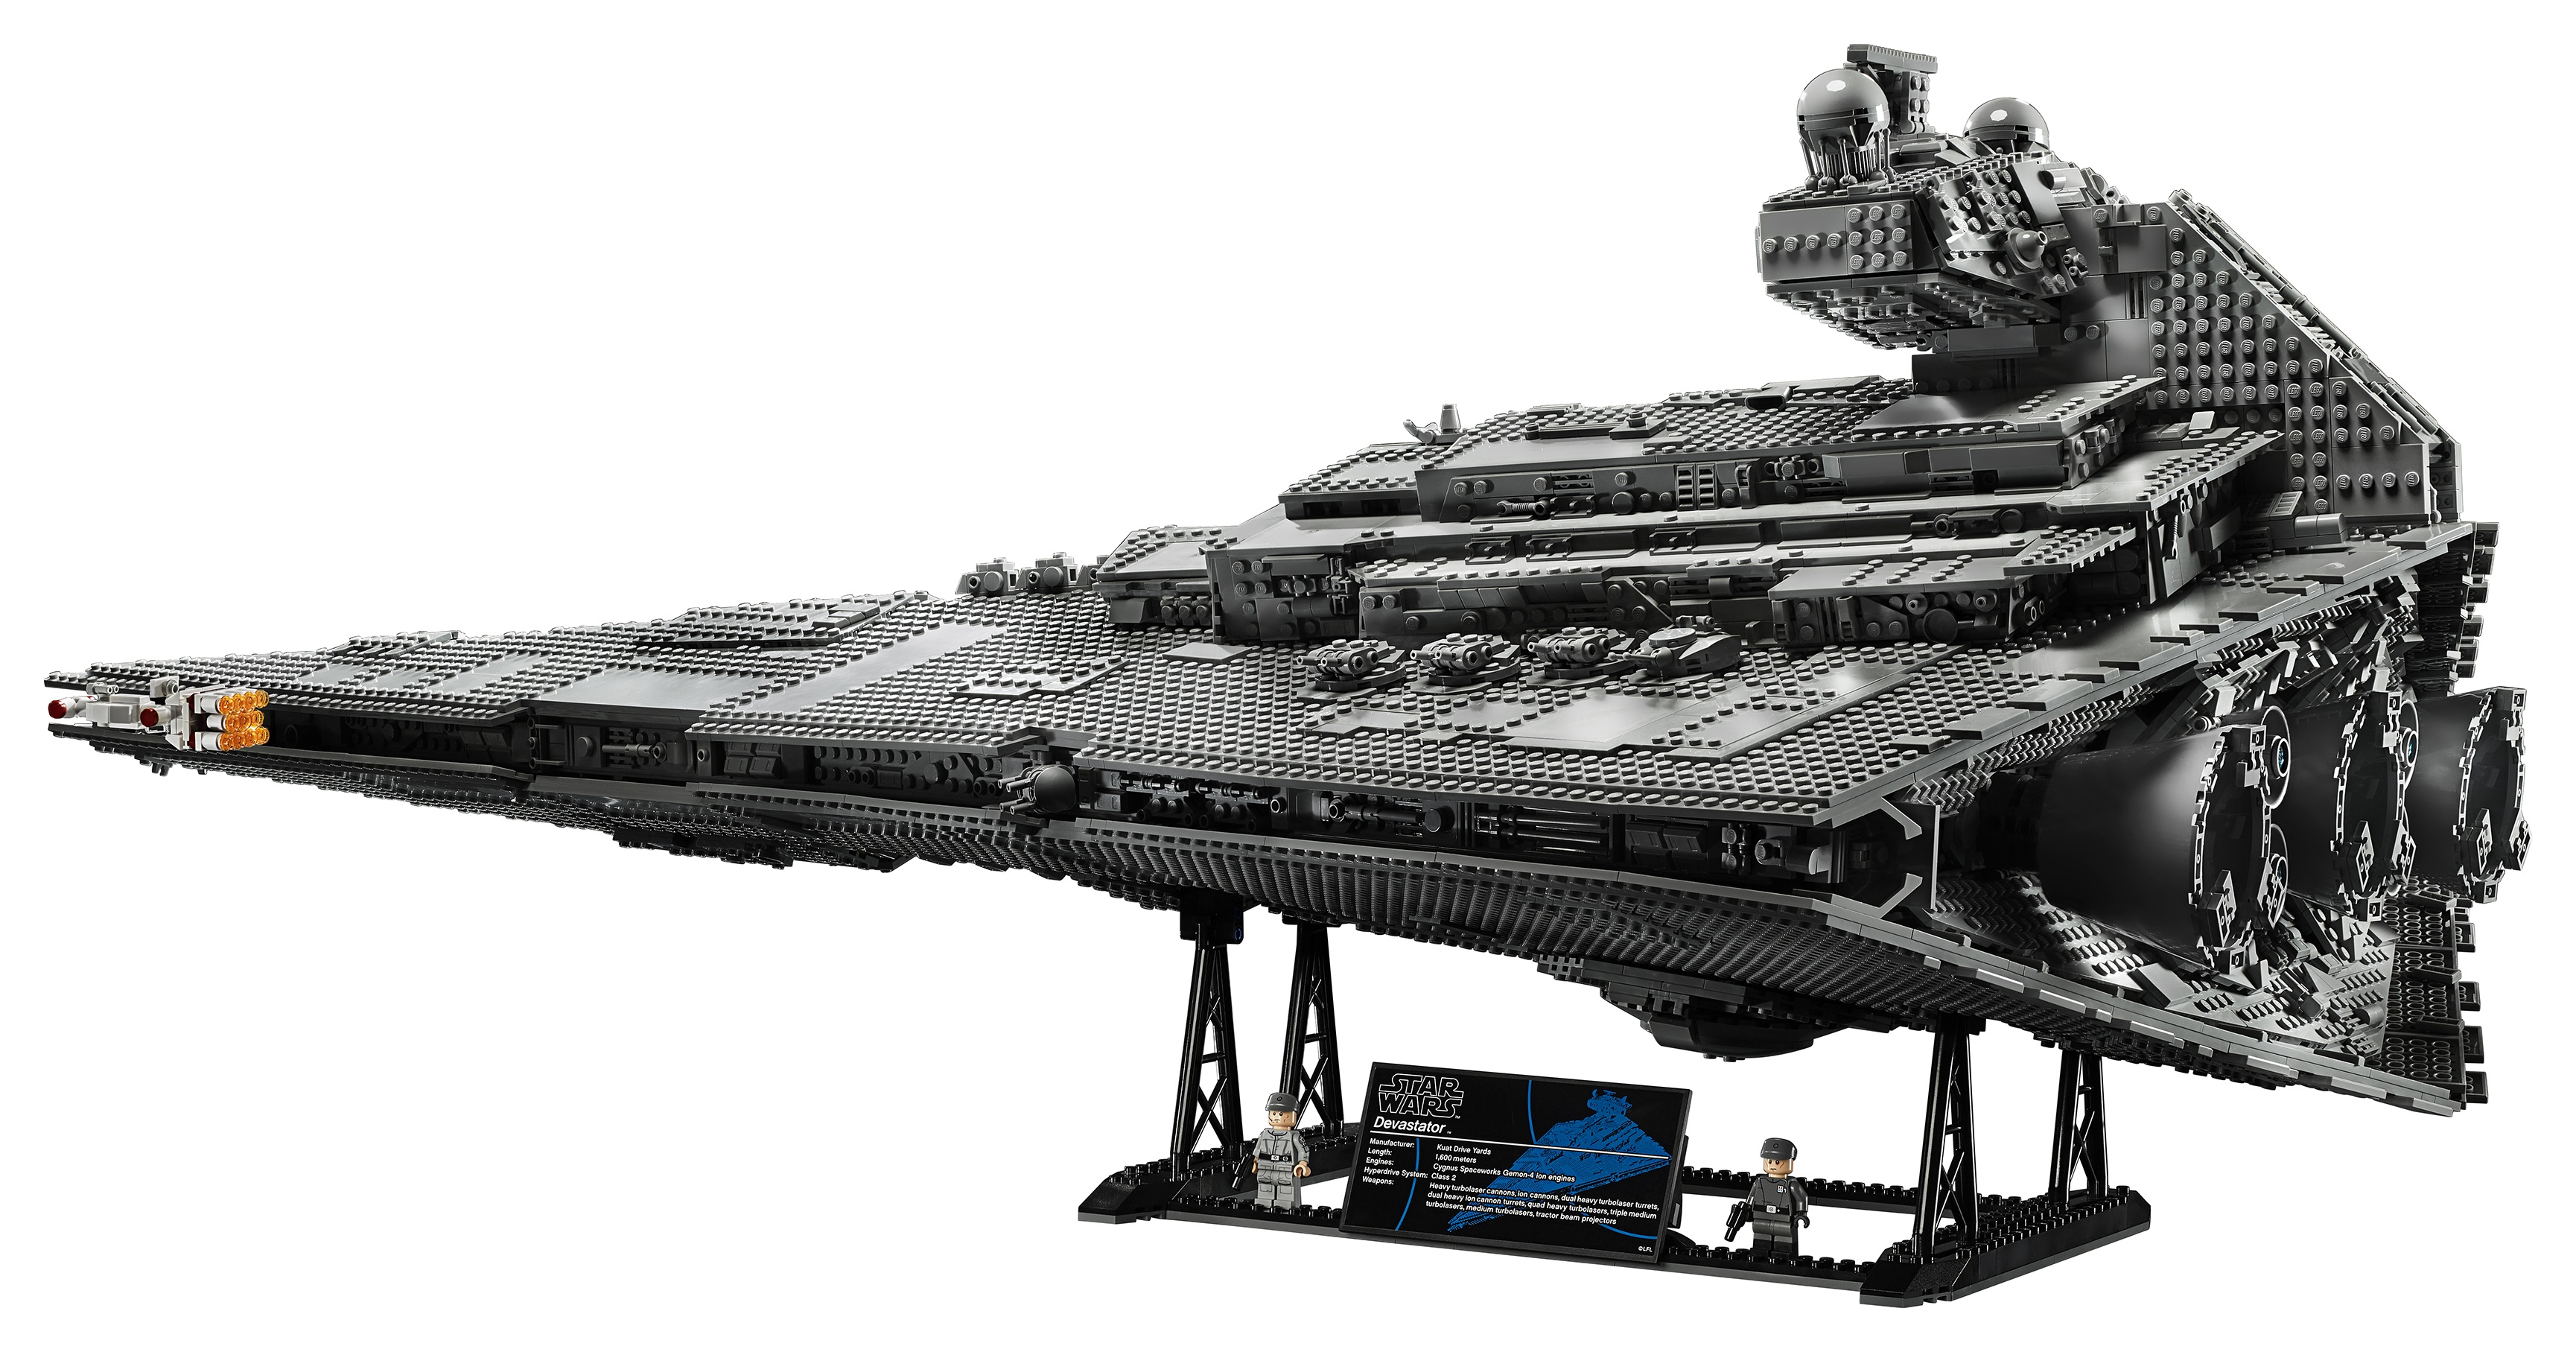 Vaisseaux Star Wars Lego : les plus beaux modèles